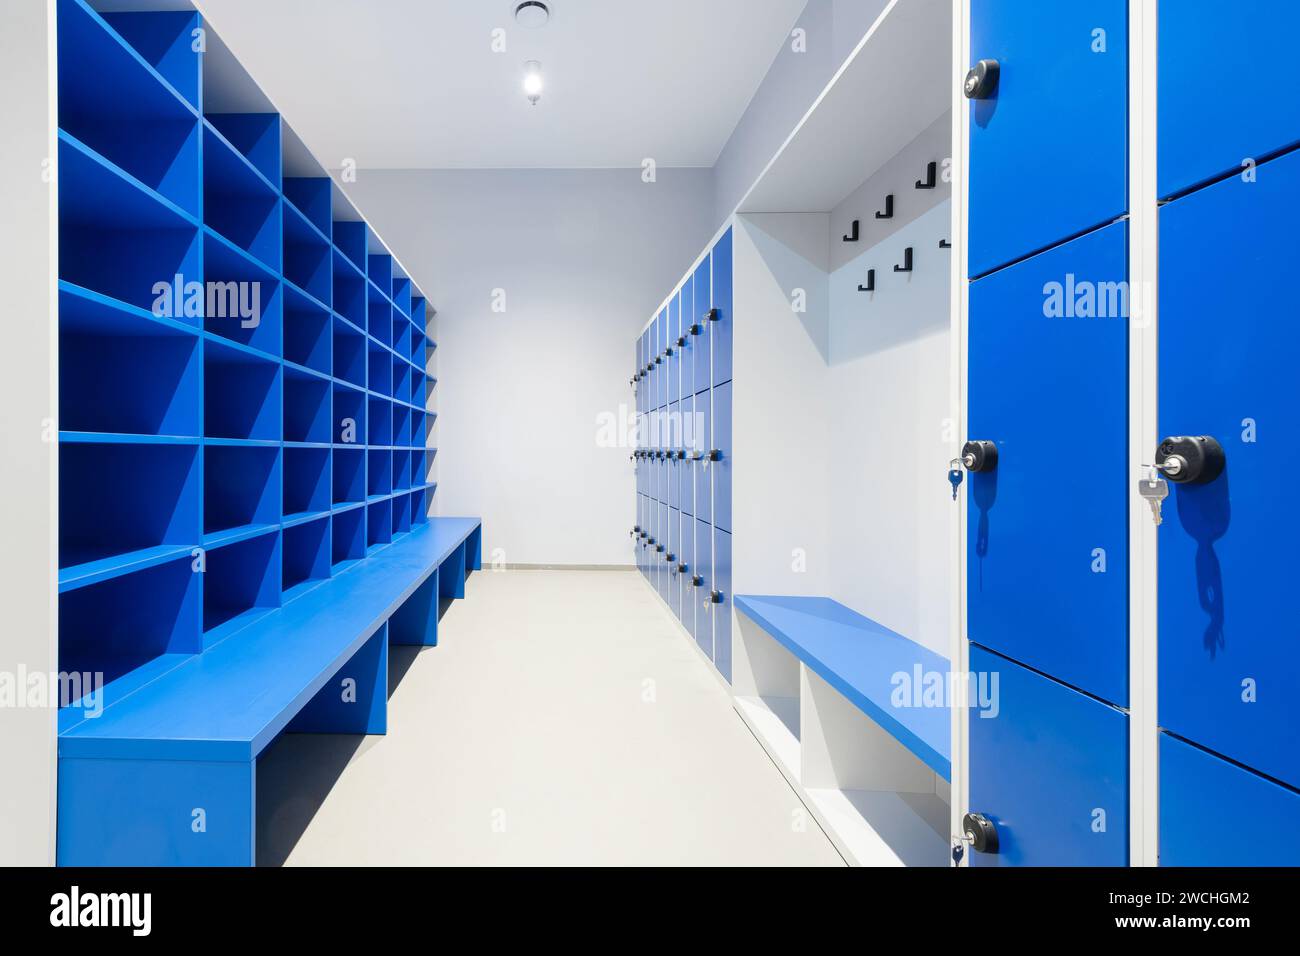 Blaue Schließfächer an einer Wand mit Schlüssel in einem Schloss und Schrank mit leeren Regalen und Bank Stockfoto